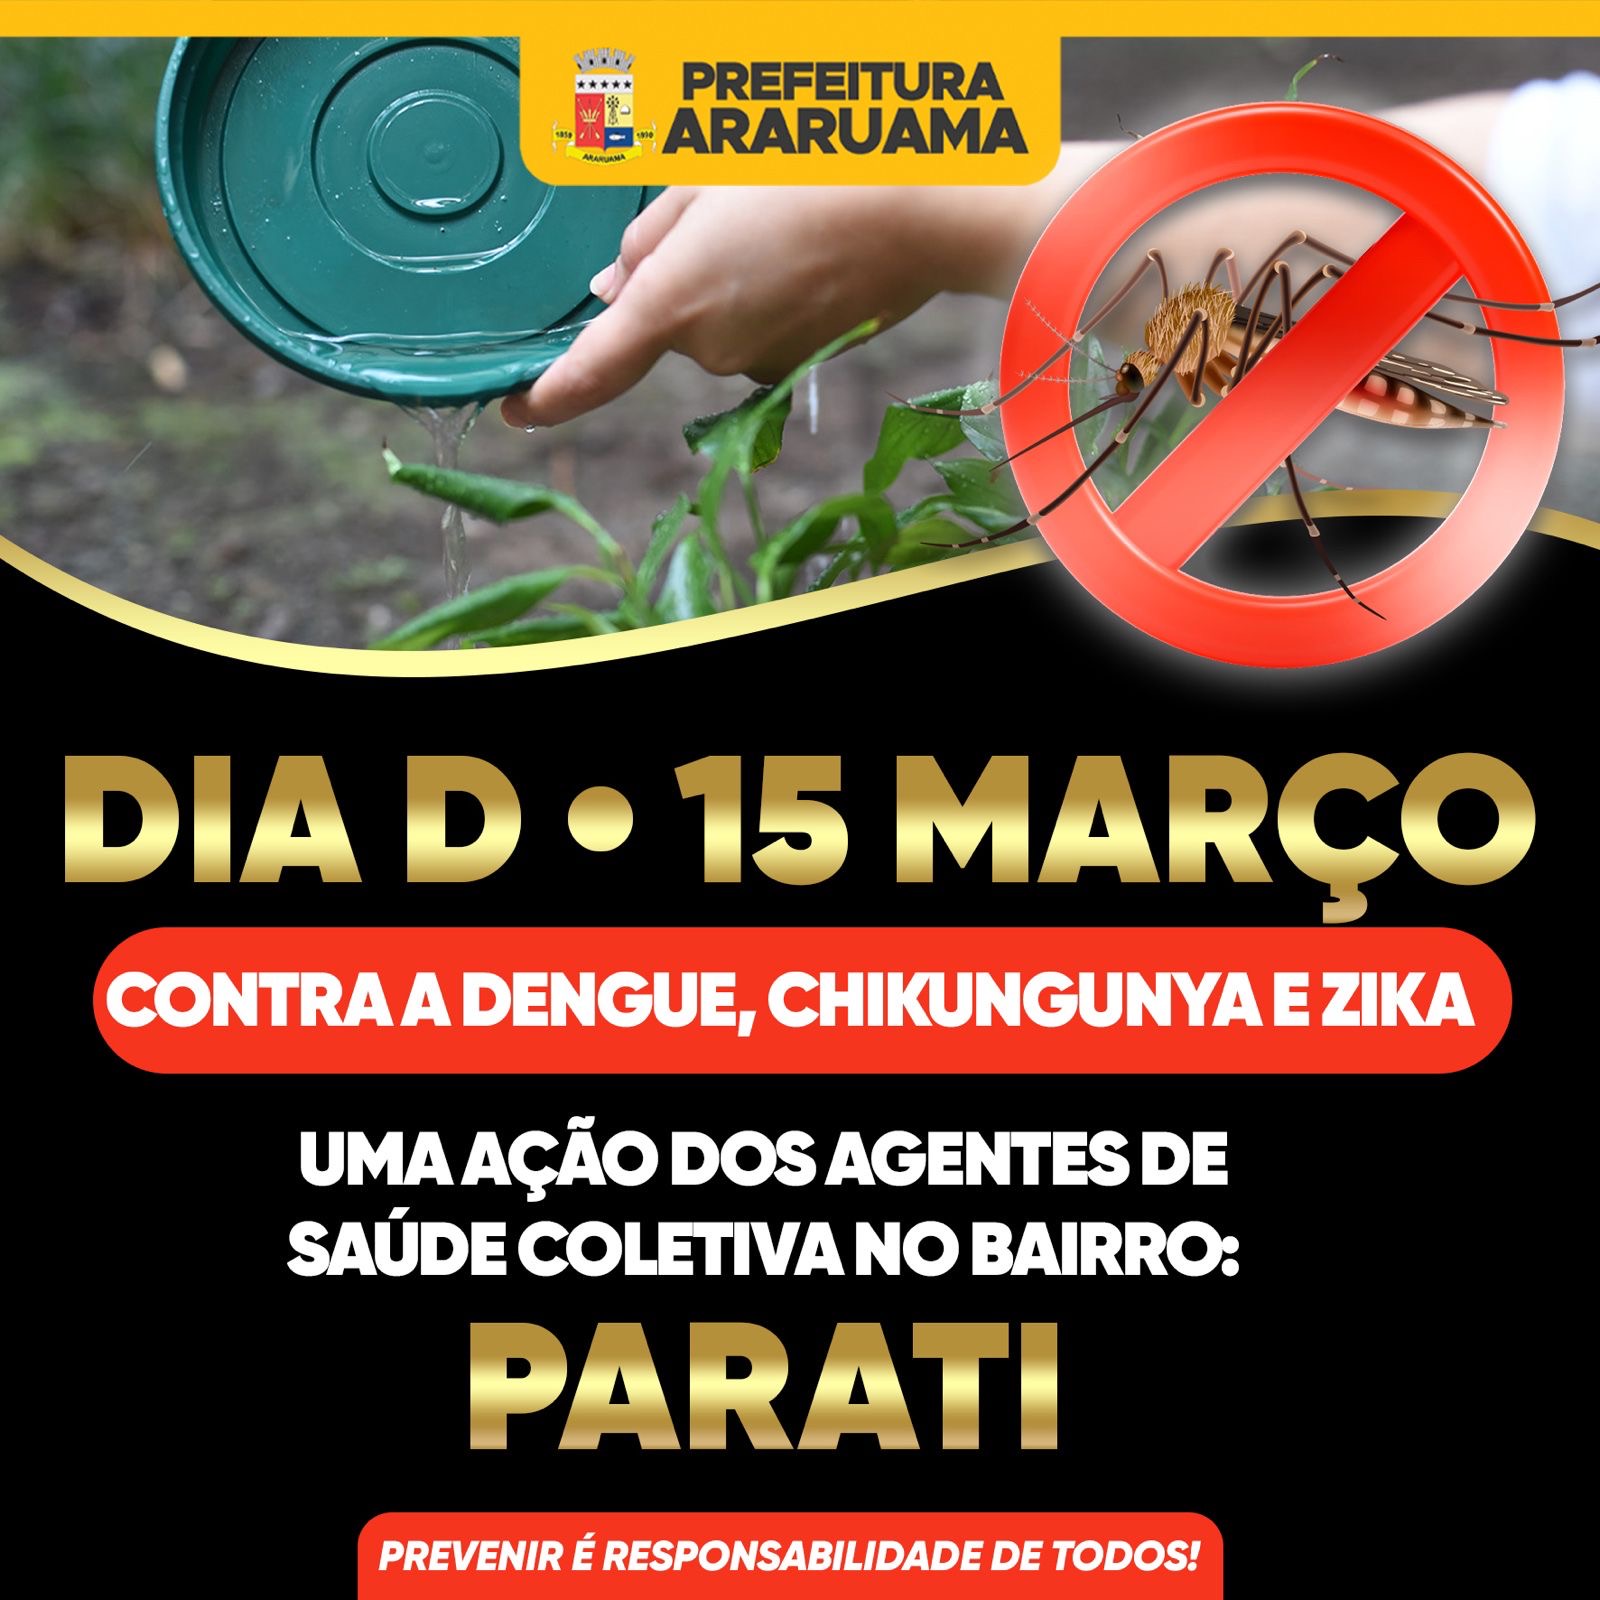 Prefeitura vai realizar o Dia D contra a dengue no bairro Parati